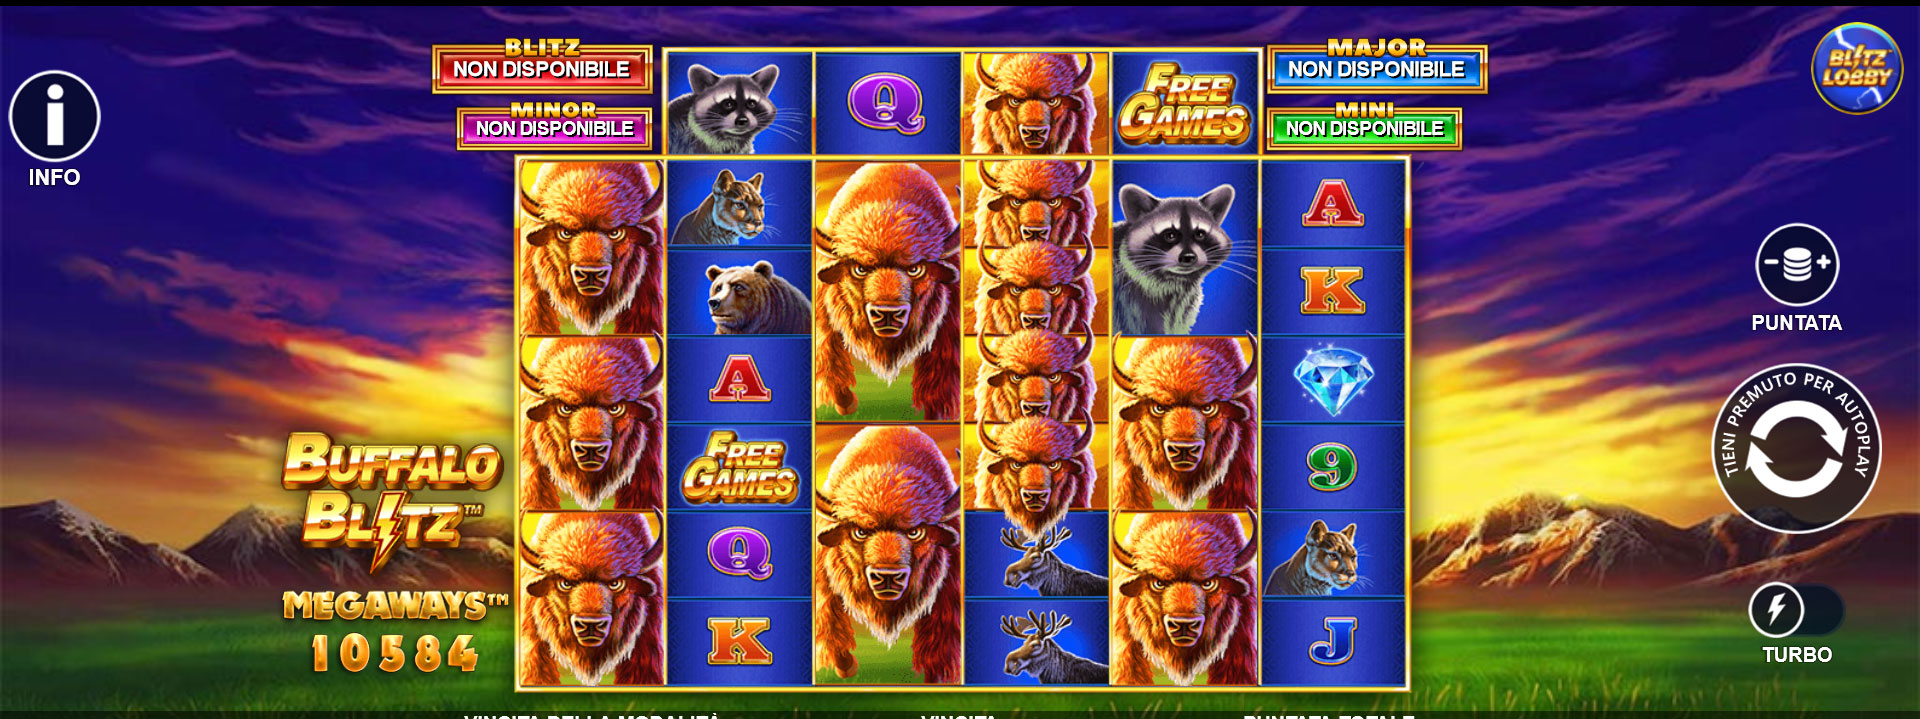 griglia del gioco slot machine Buffalo Blitz Megaways